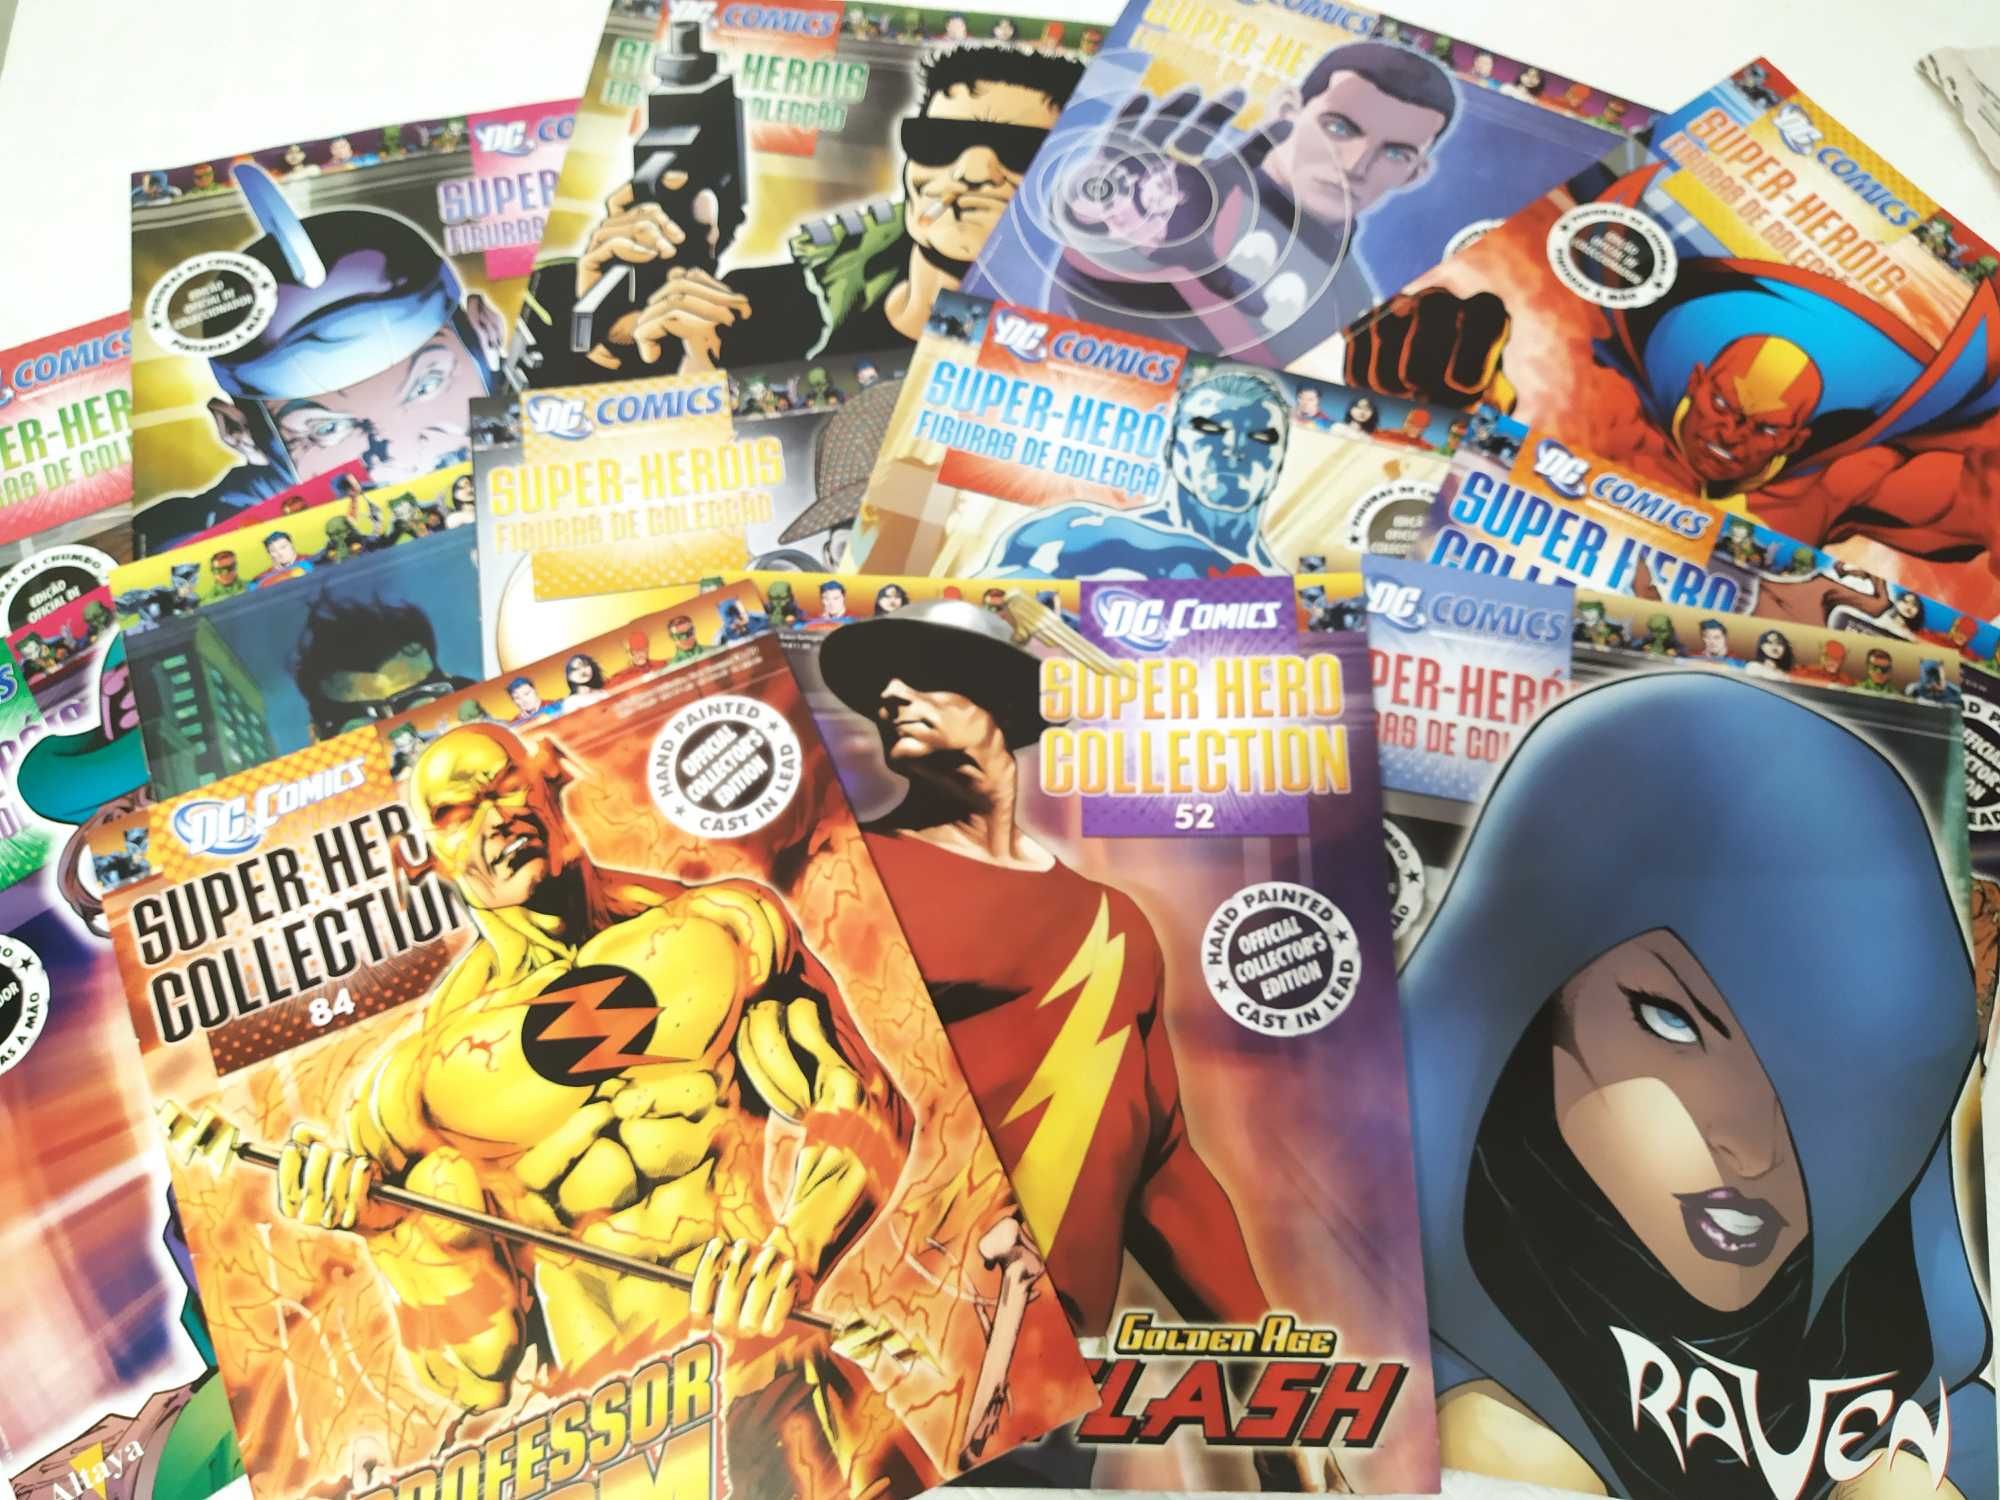 Arquivadores Revistas e Bases Exposição figuras Marvel e DC Comics